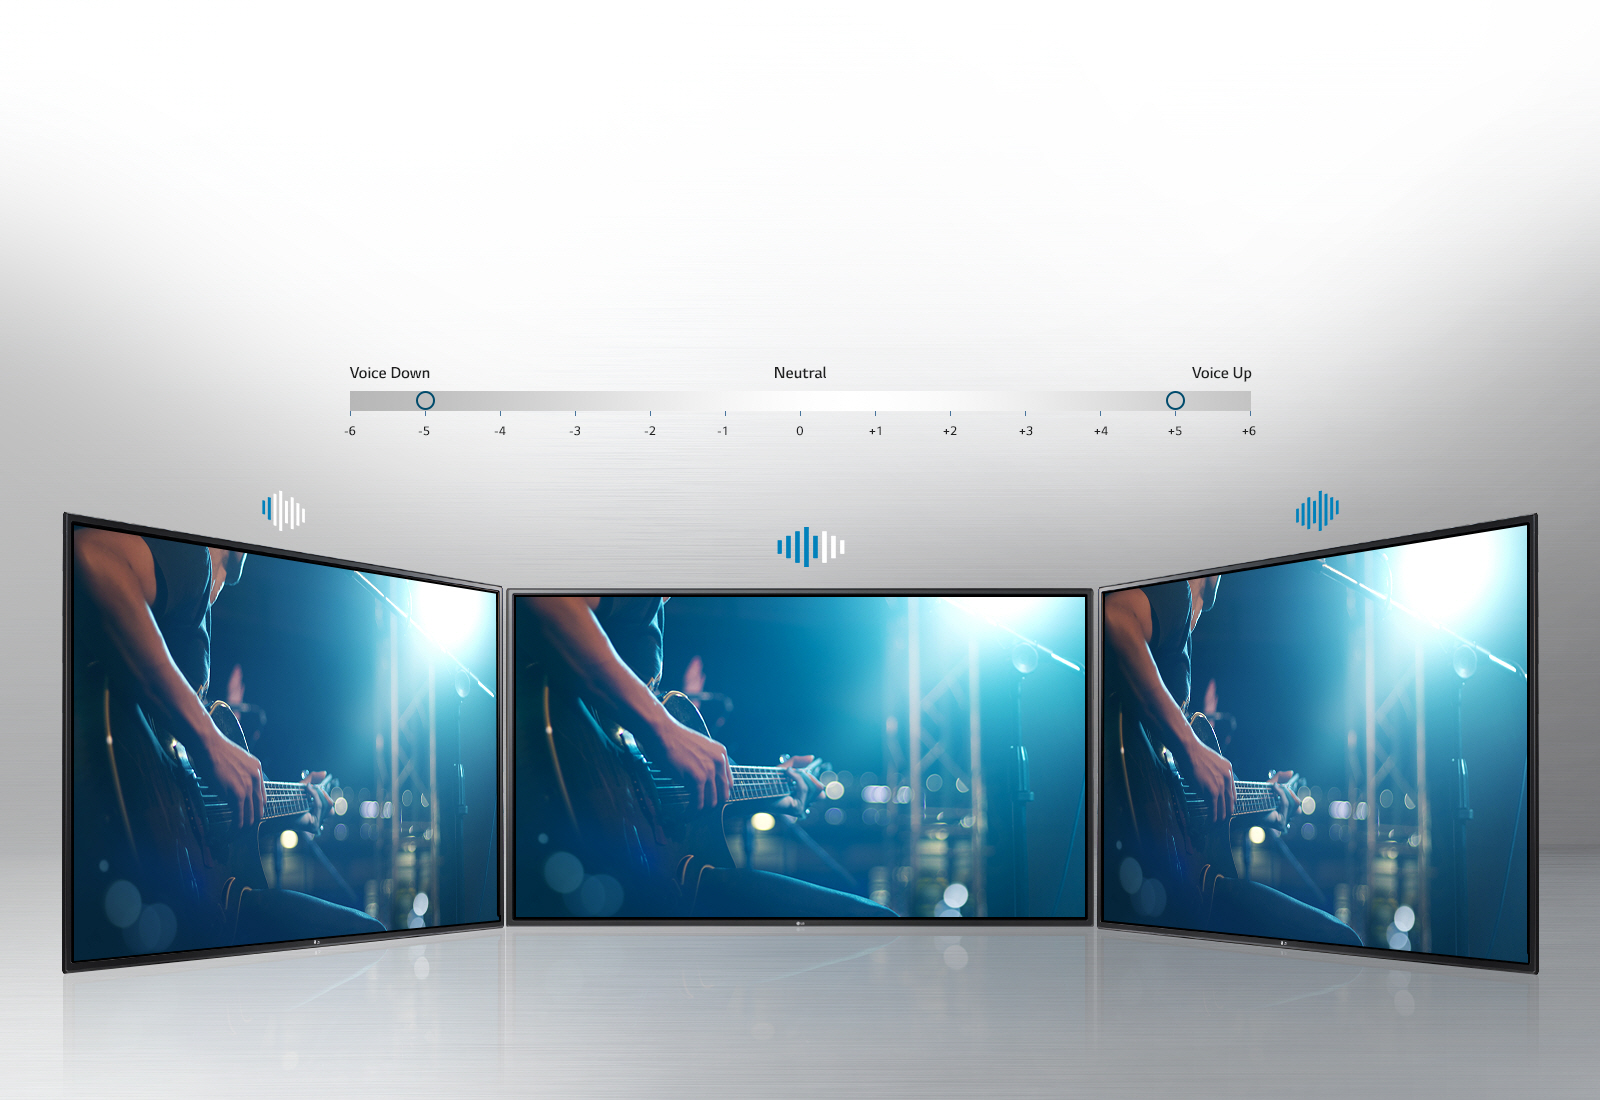 تلویزیون ال ای دی ال جی LED TV LG 49LH55500GI - سایز 49 اینچ